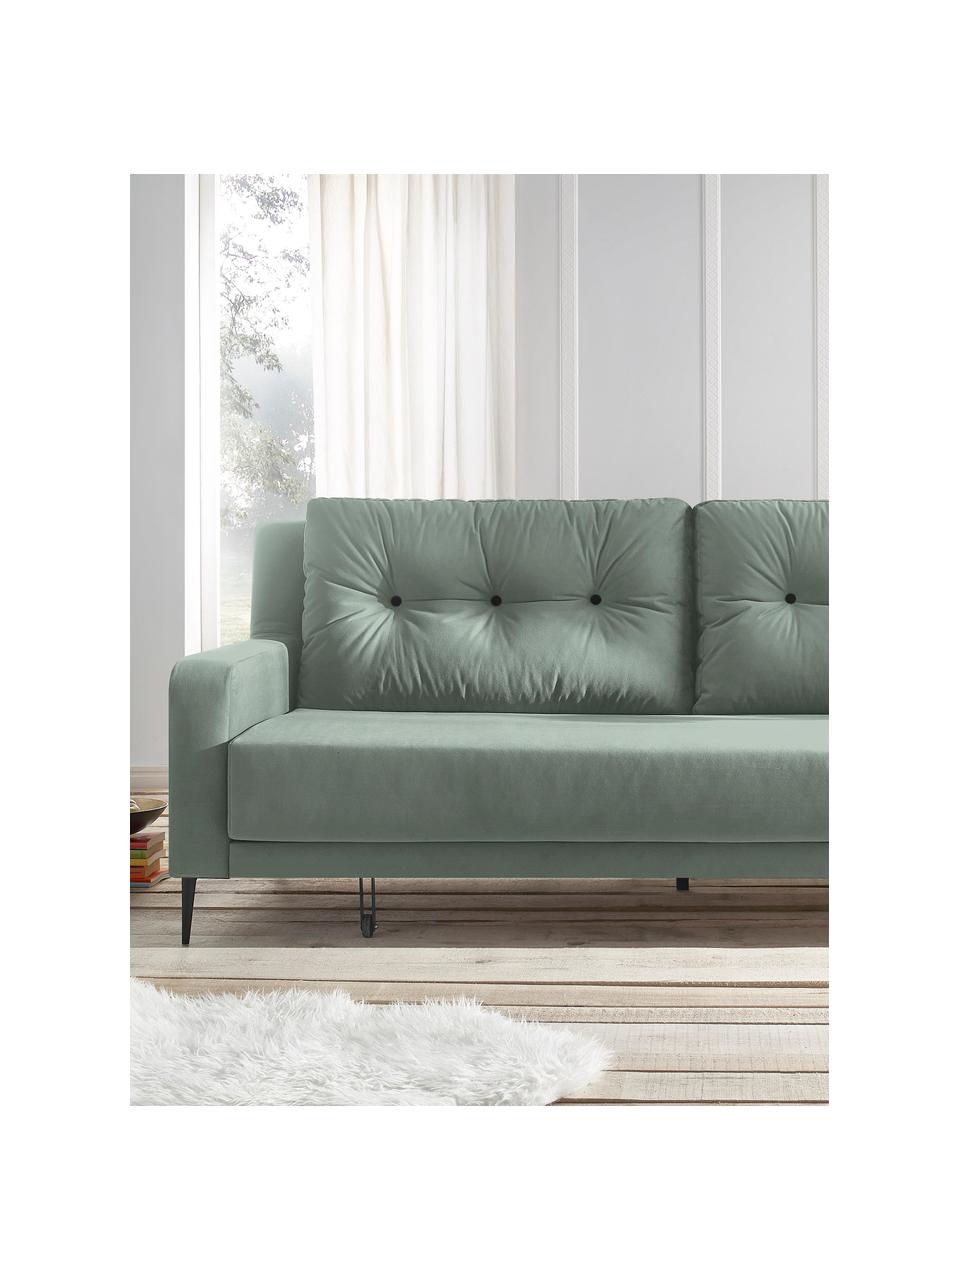 Sofa rozkładana z aksamitu Bergen (3-osobowa), Tapicerka: 100% aksamit poliestrowy, Nogi: metal lakierowany, Zielony miętowy, S 222 x G 92 cm